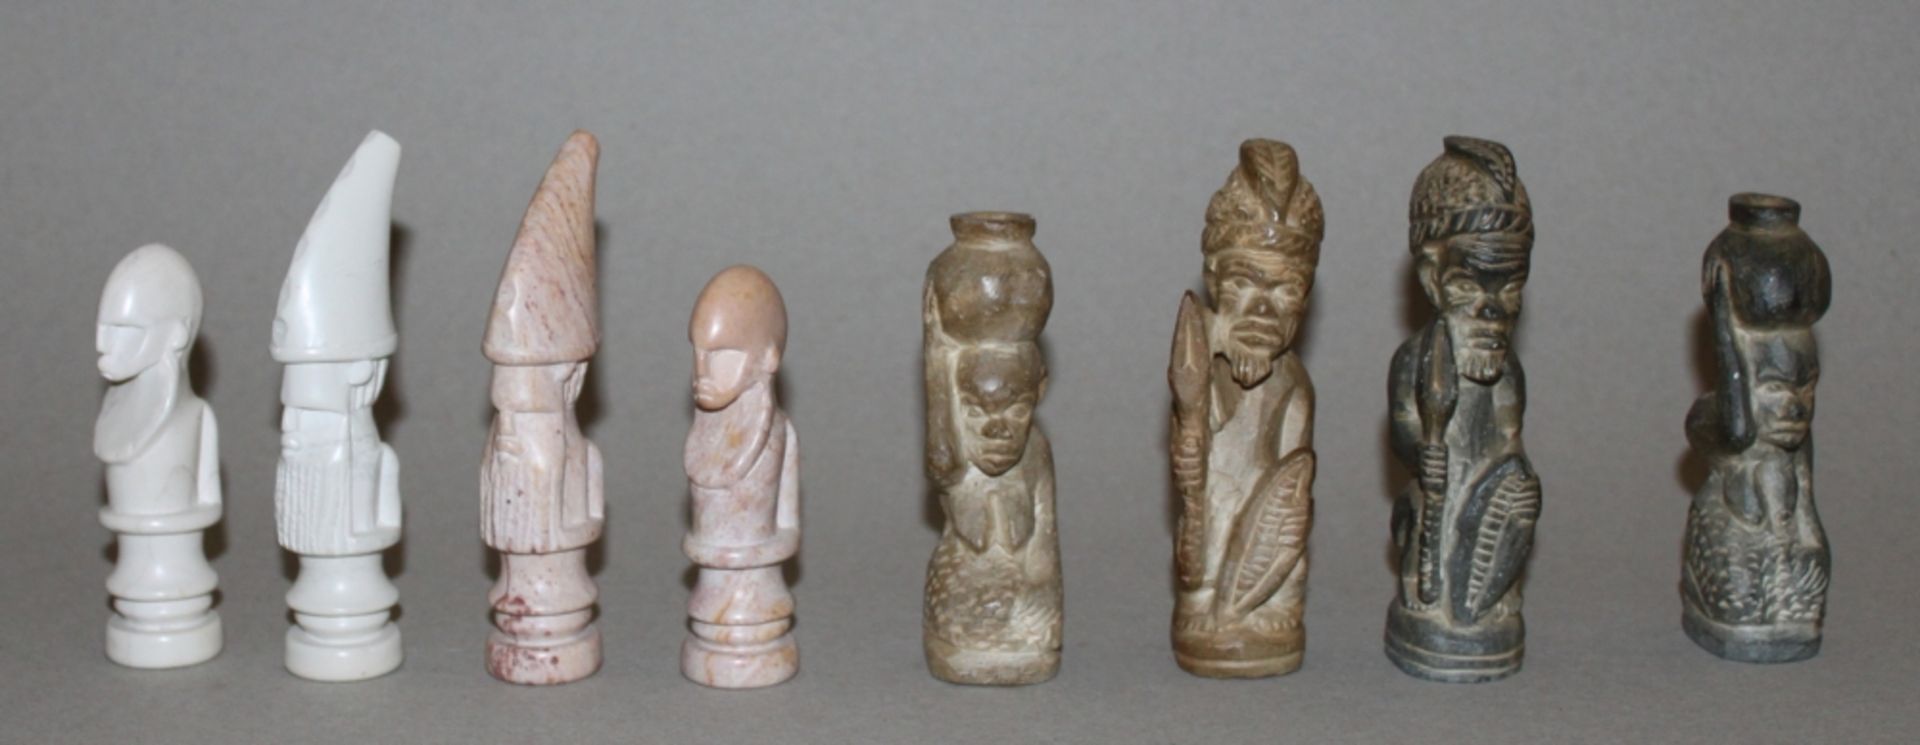 Afrika. Schachfiguren aus Kunststein im traditionellen afrikanischen Stil mit Schachbrett. Eine